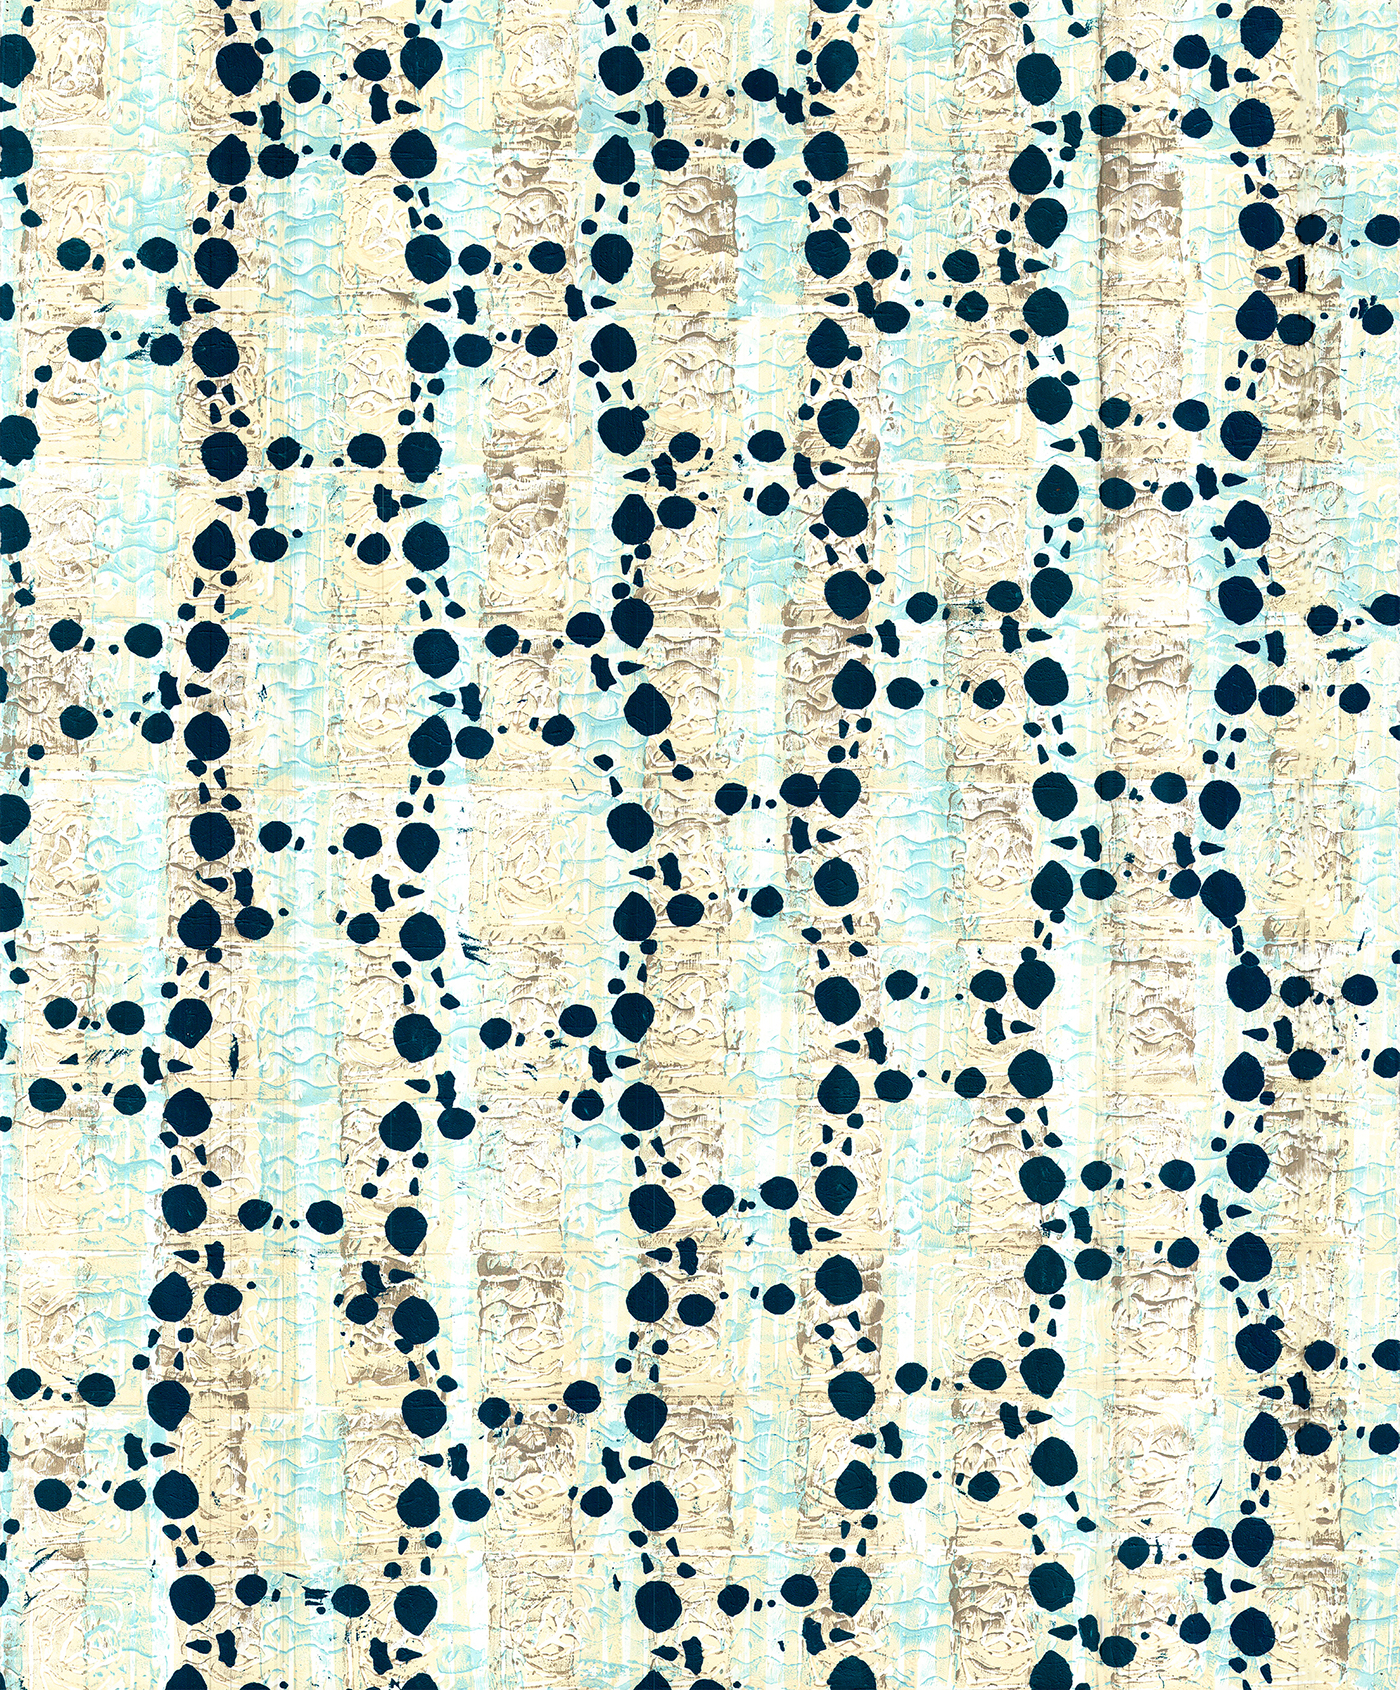 prints surface design Collection design doug stencils linocuts Textiles final pattern